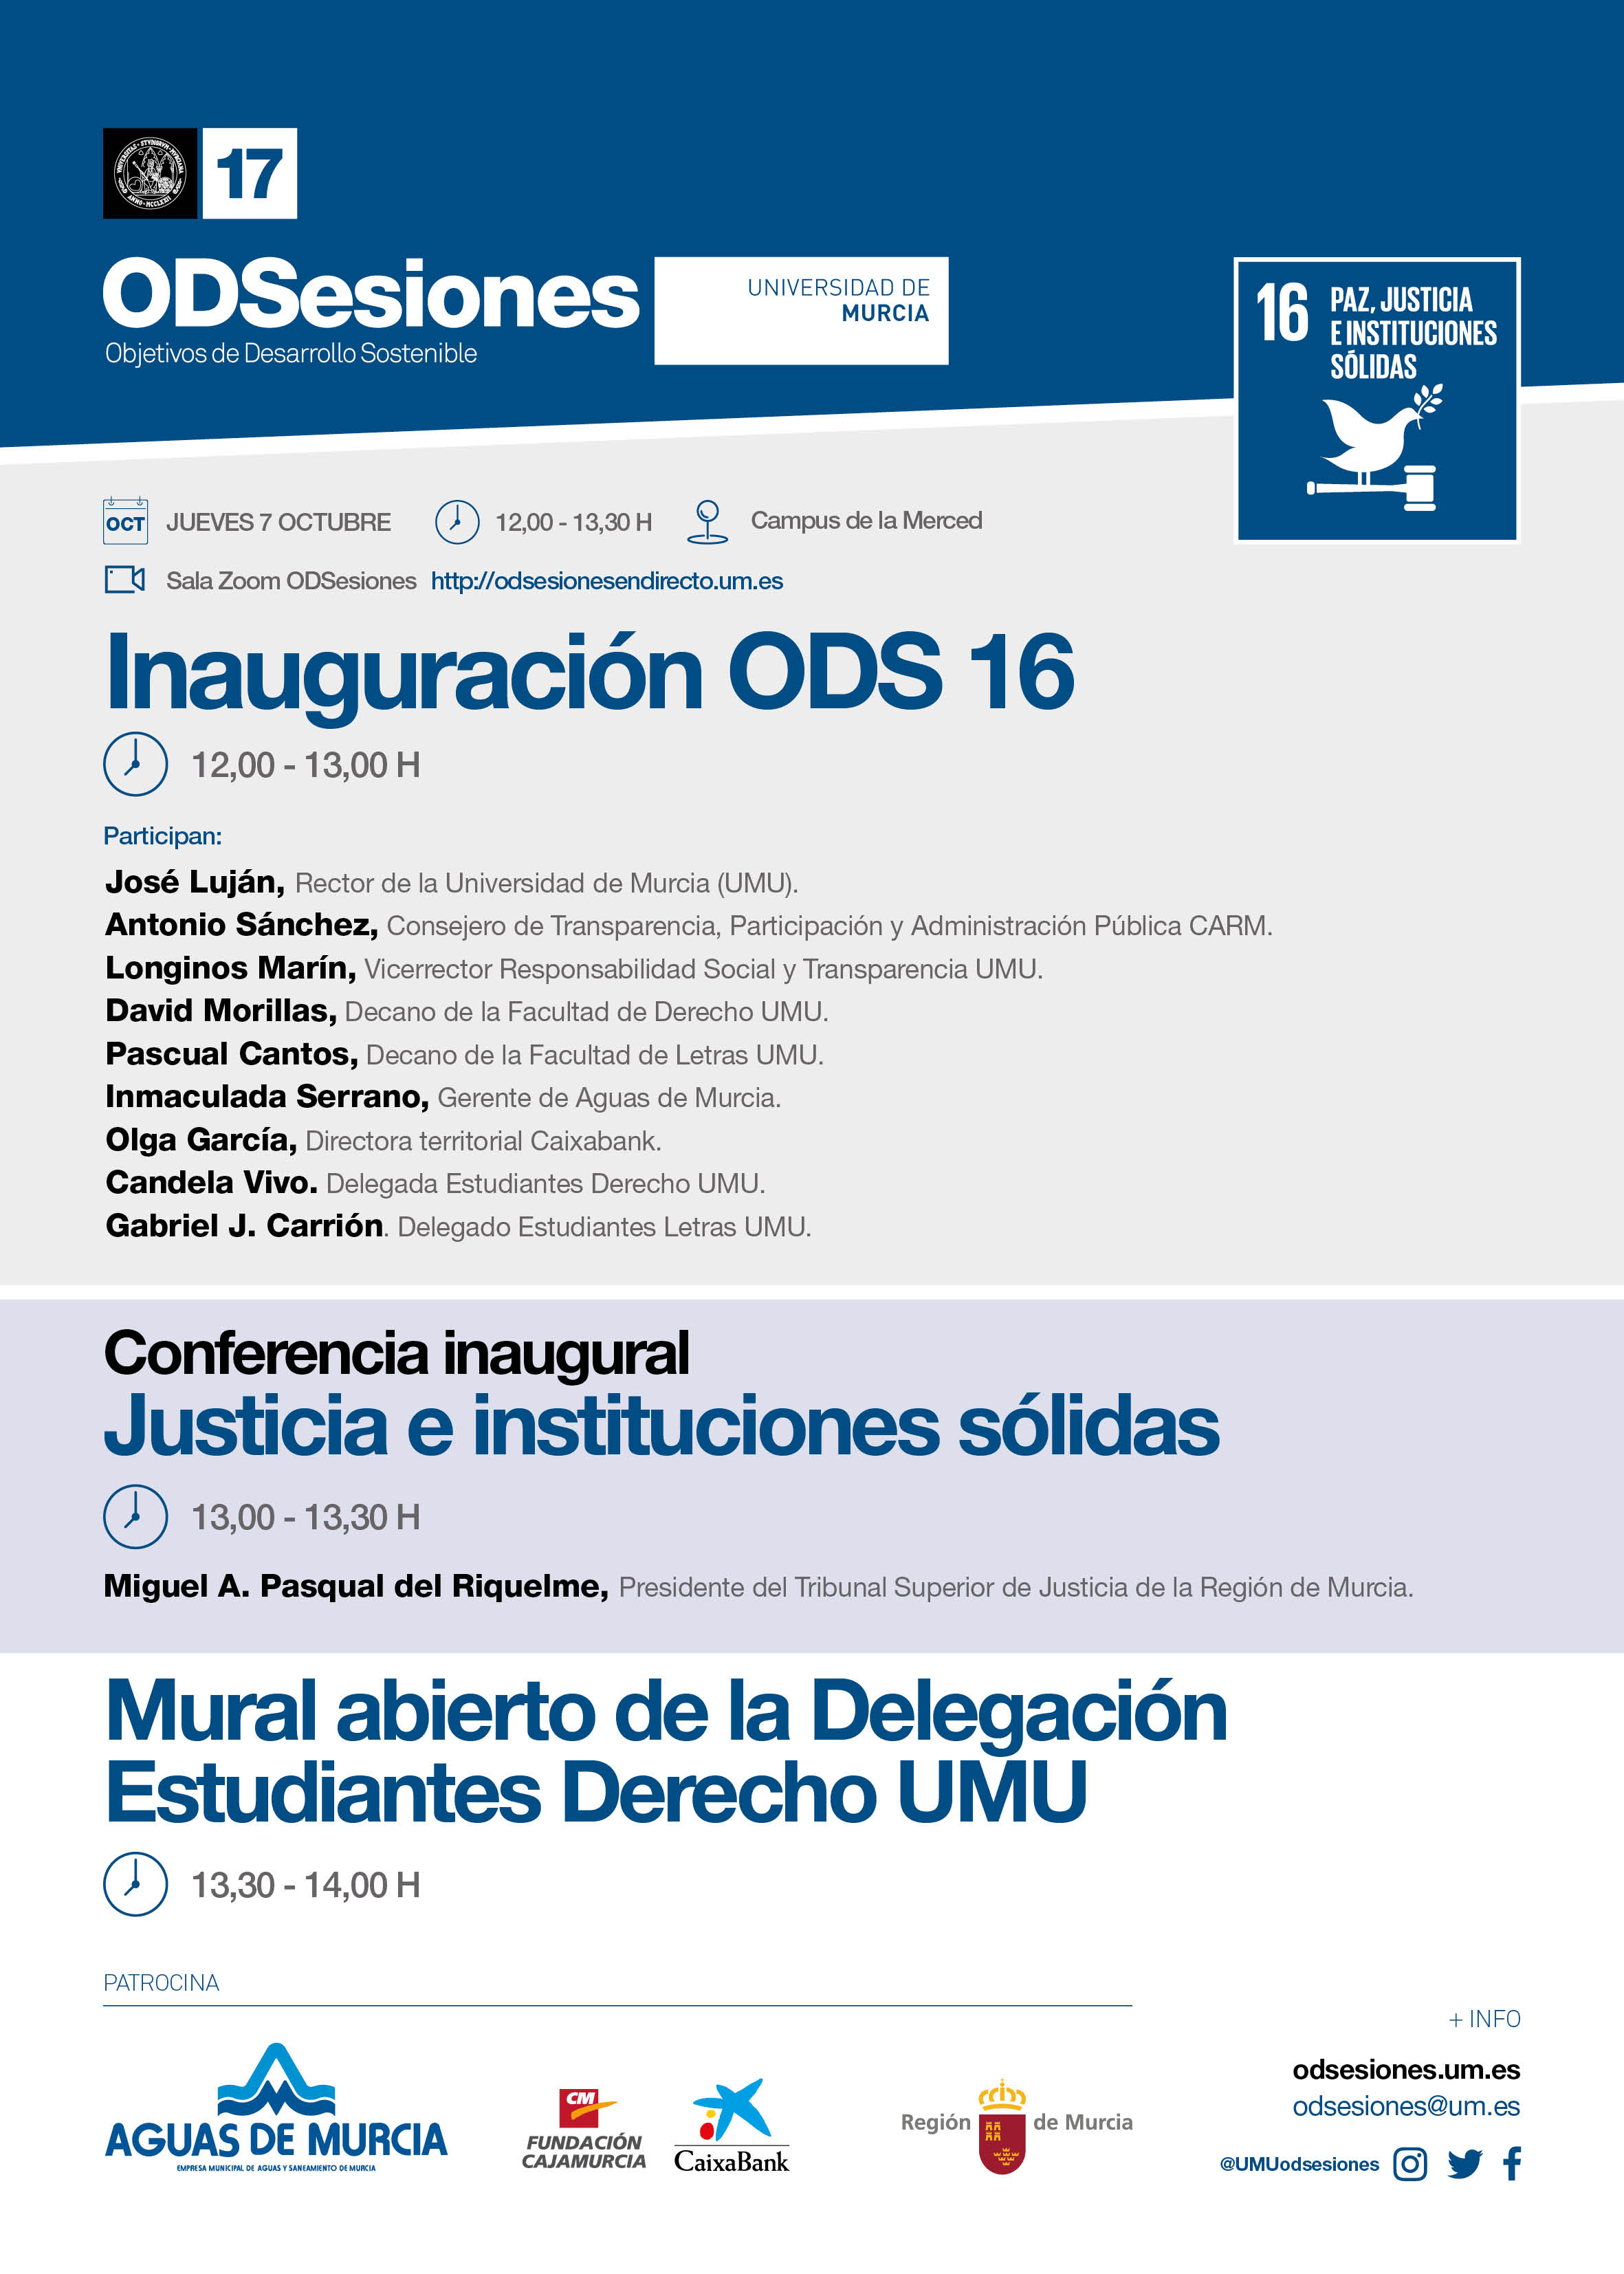 Inauguración del ODS 16 de ODSesiones de la Universidad de Murcia